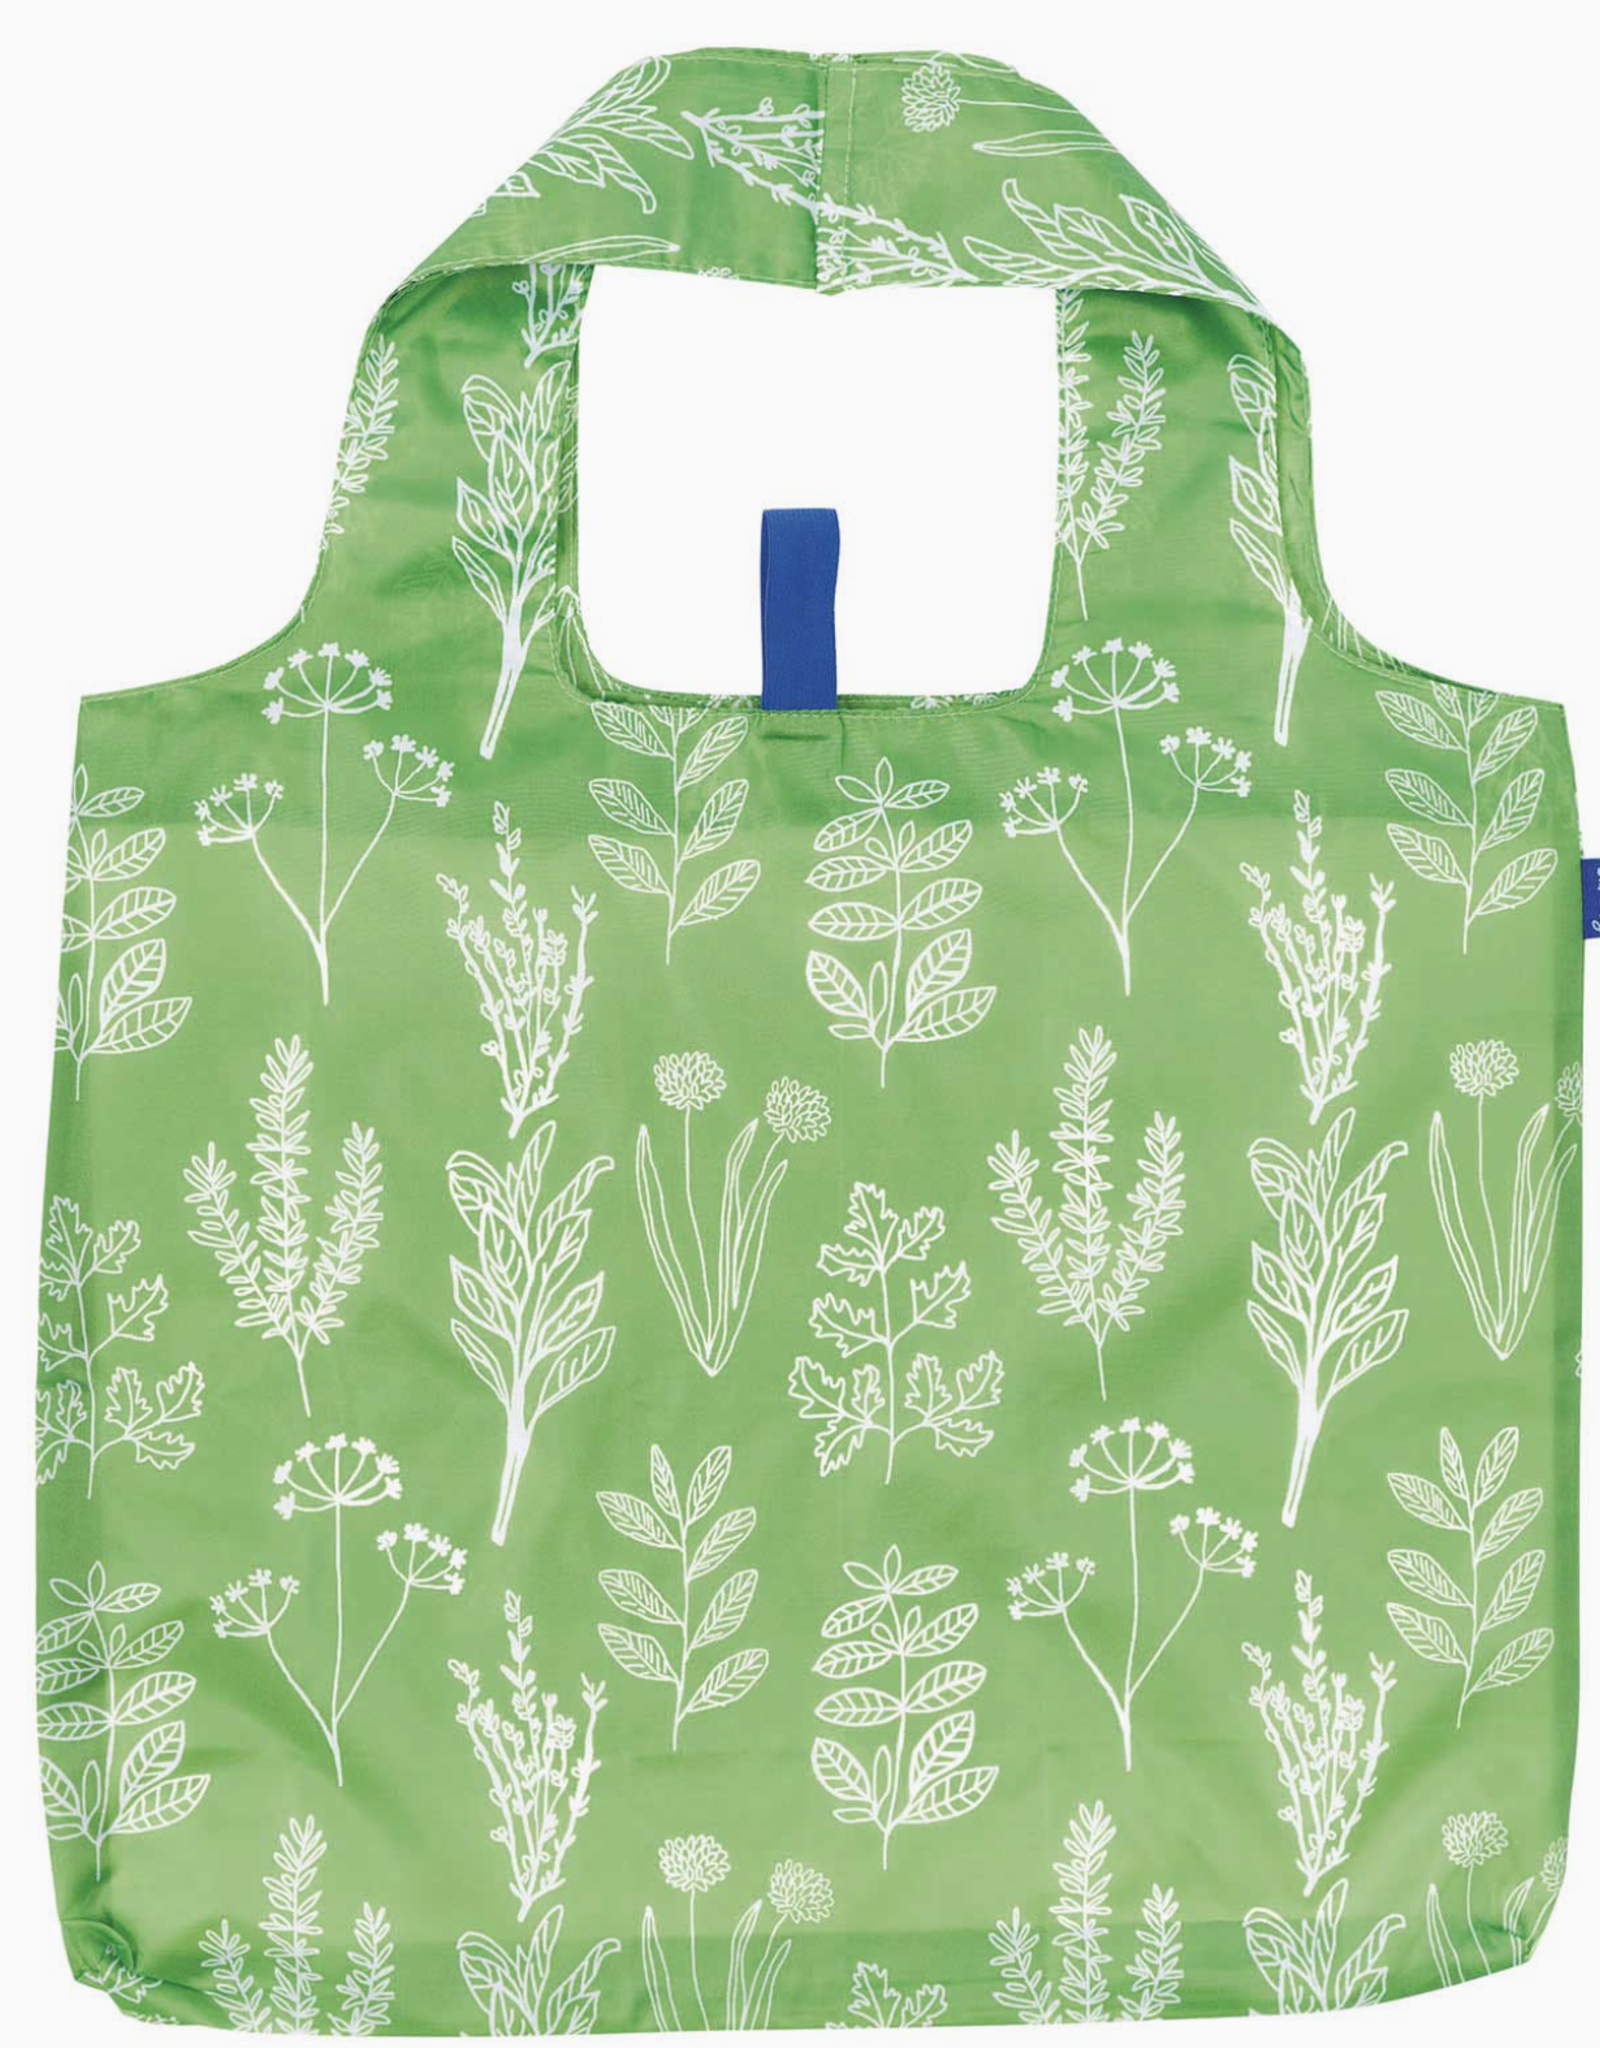 Rockflowerpaper Blu Bag Herbs Green